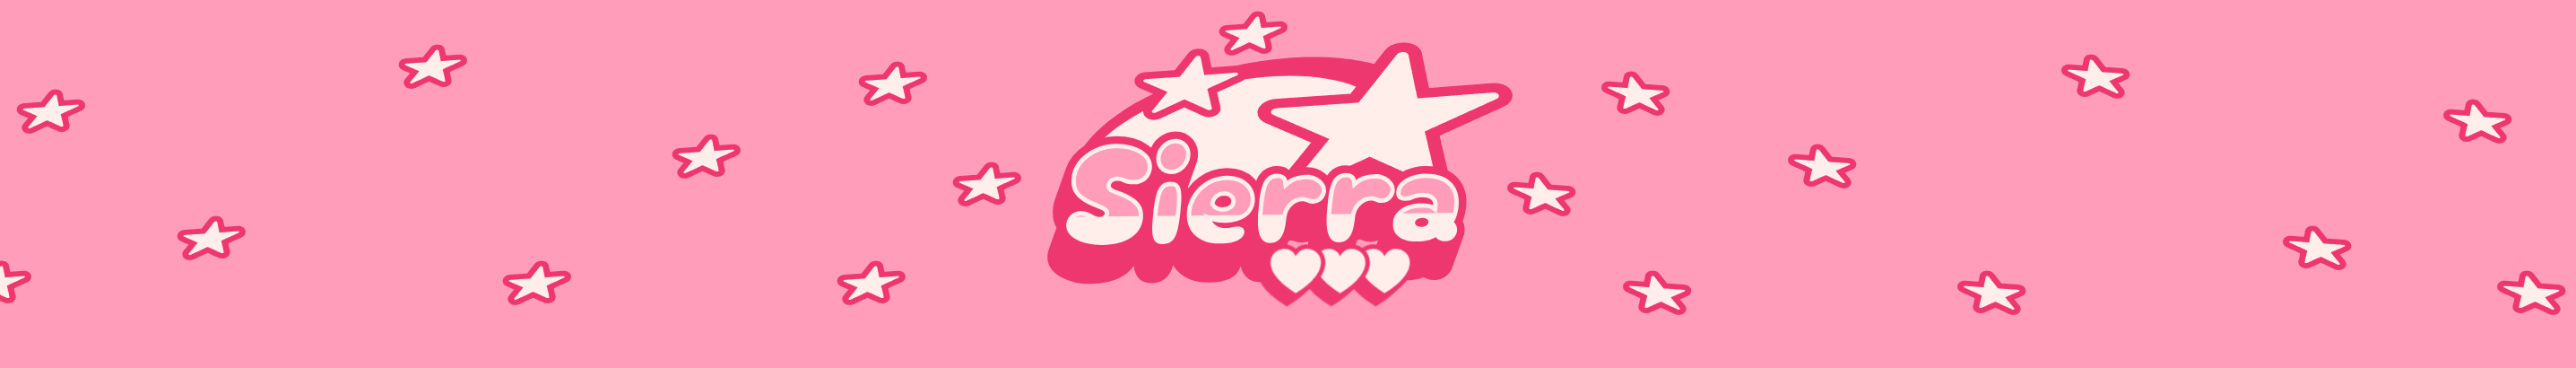 Sierra W.'s profile banner